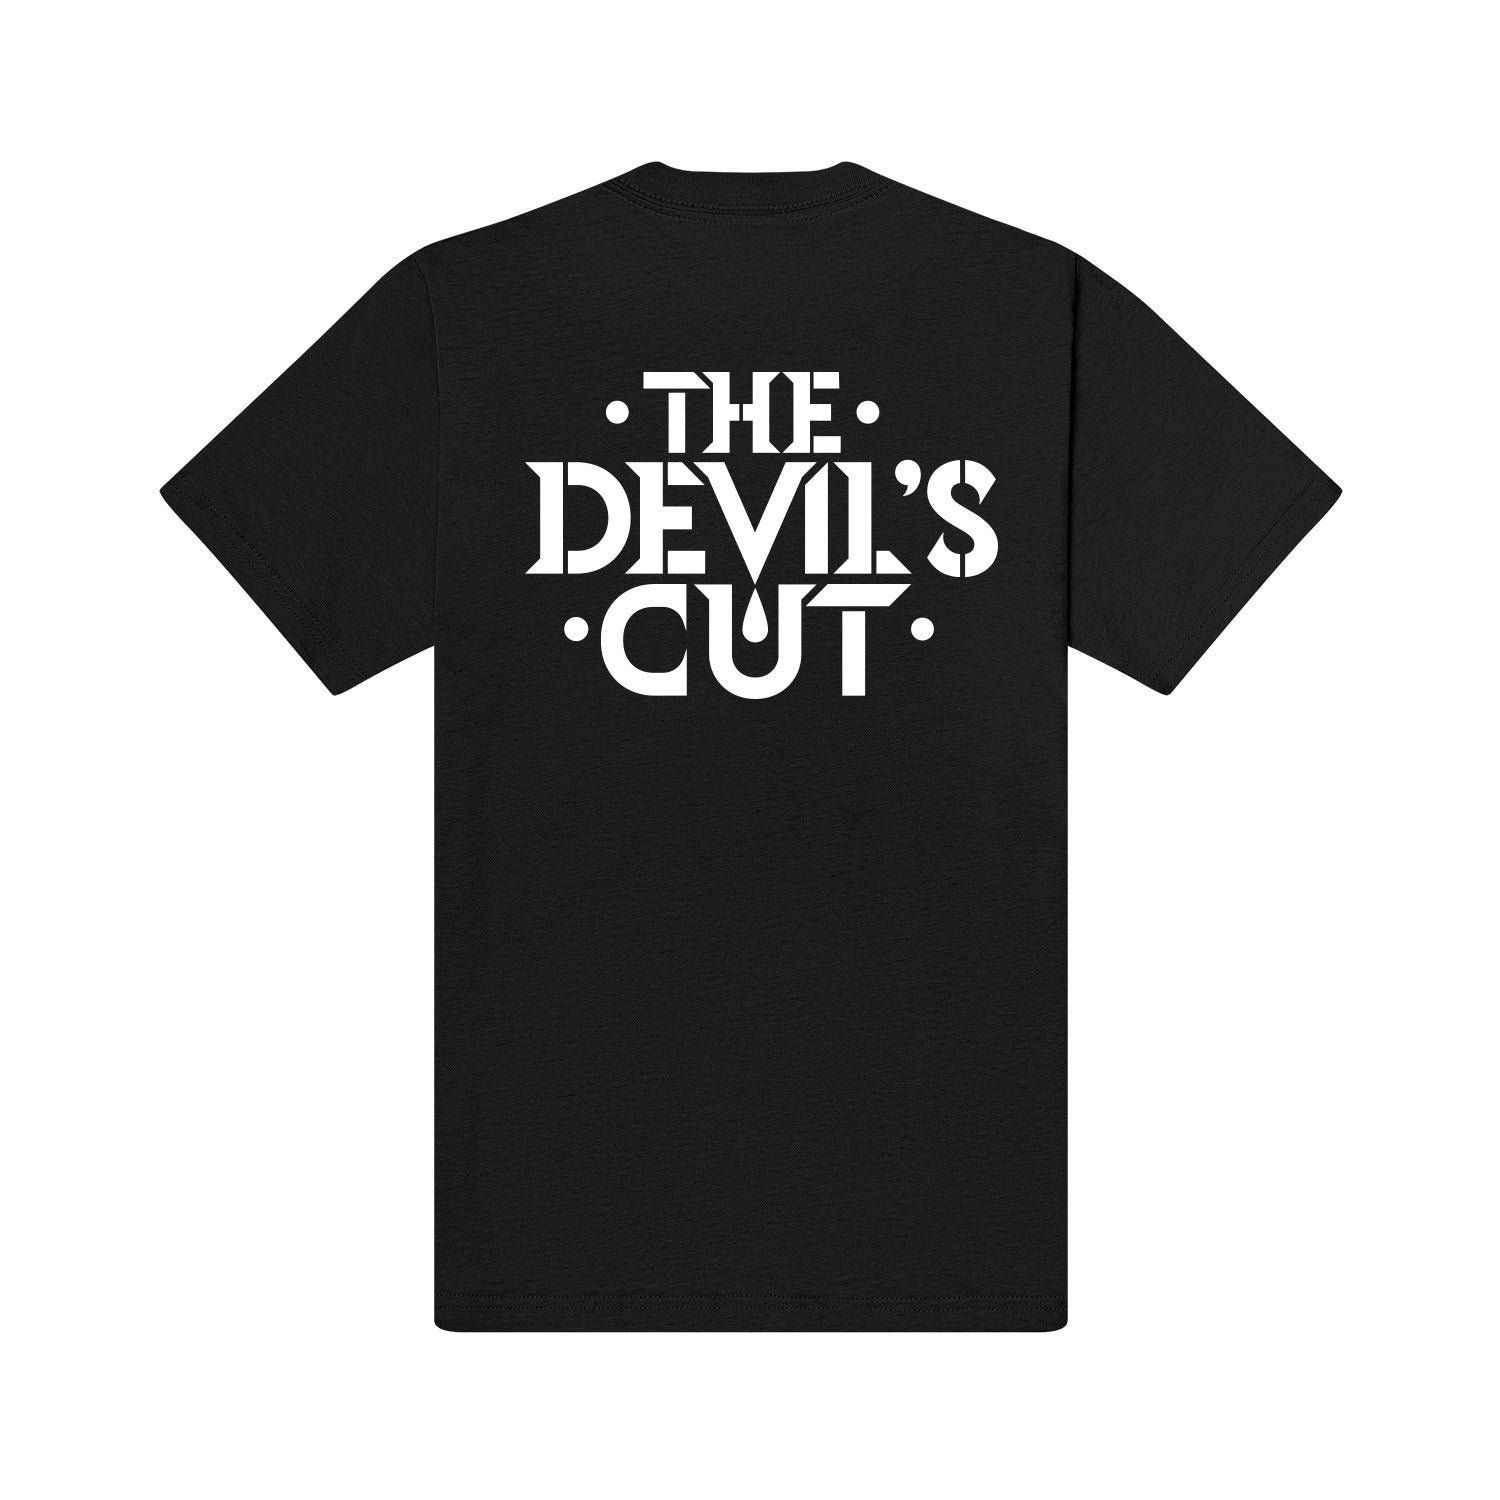 The Devil's Cut Tee